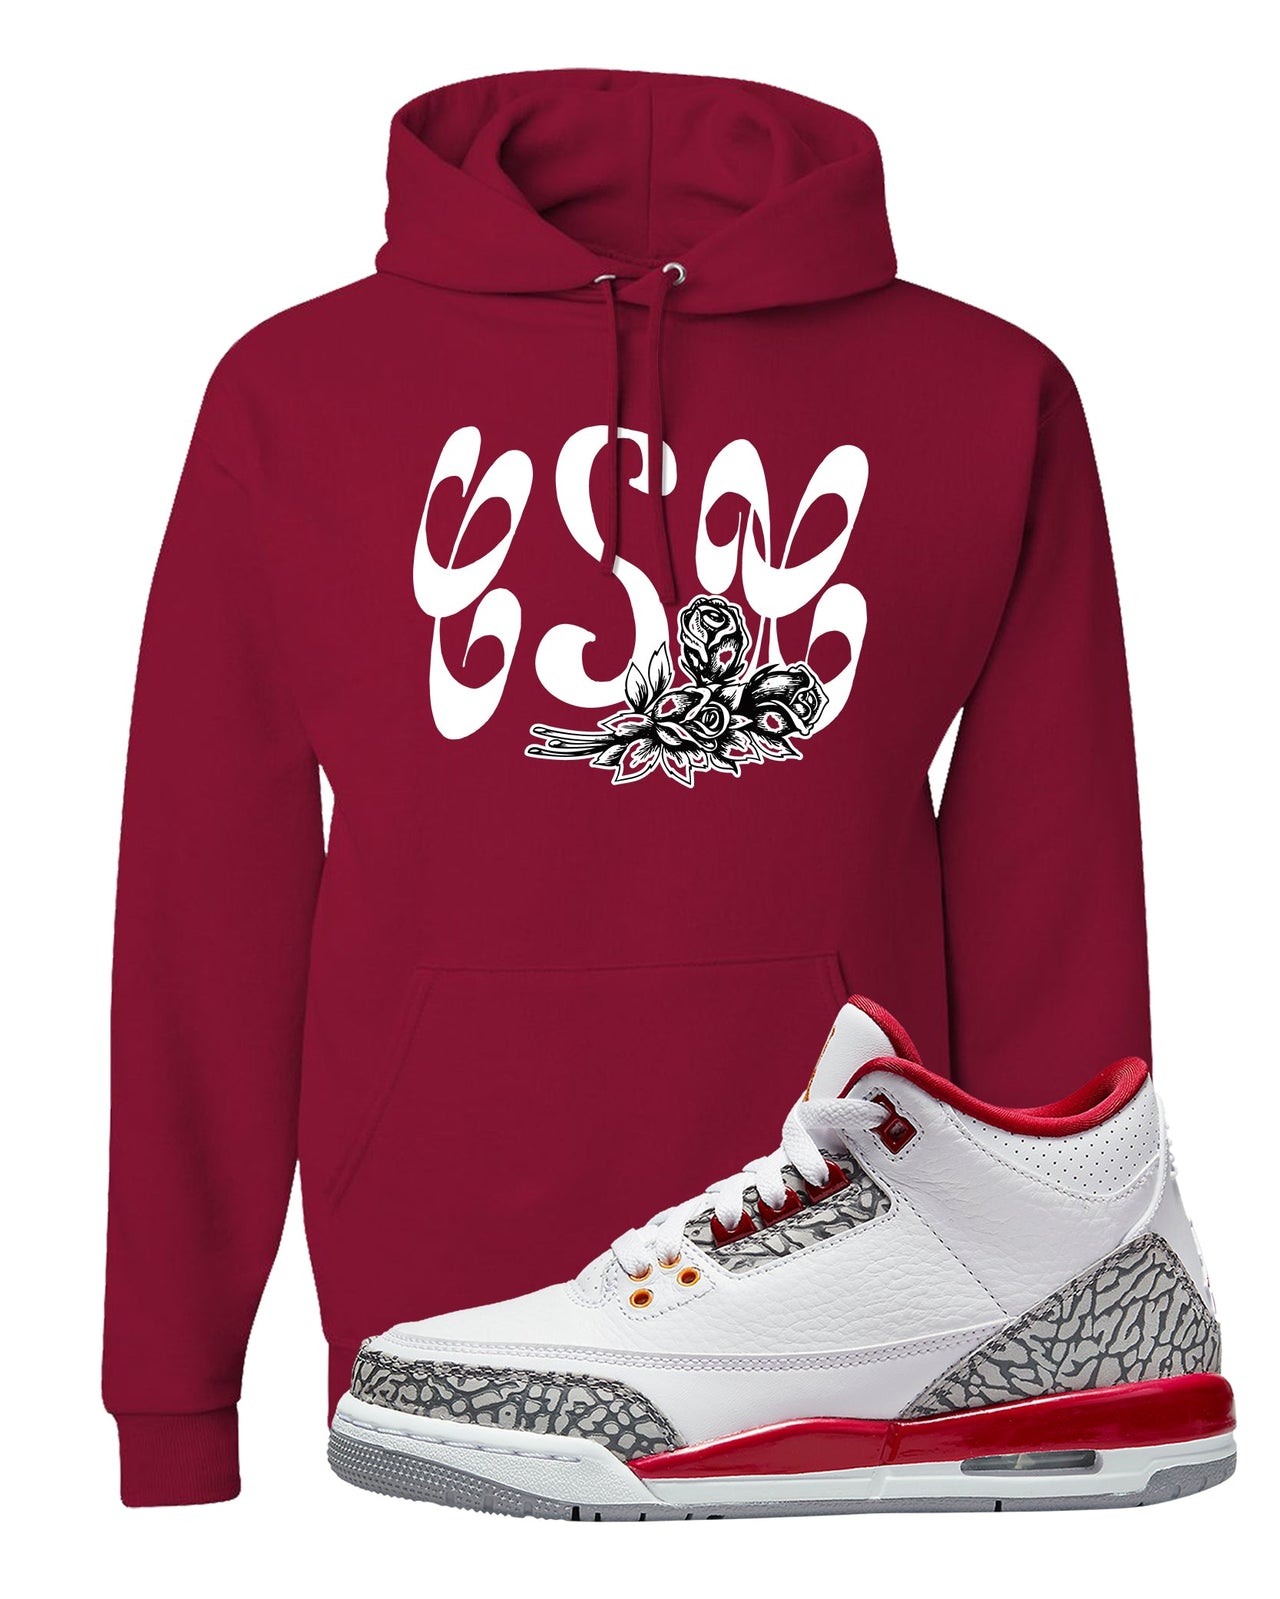 Cardinal Red 3s Hoodie | Certified Sneakerhead, Cardinal